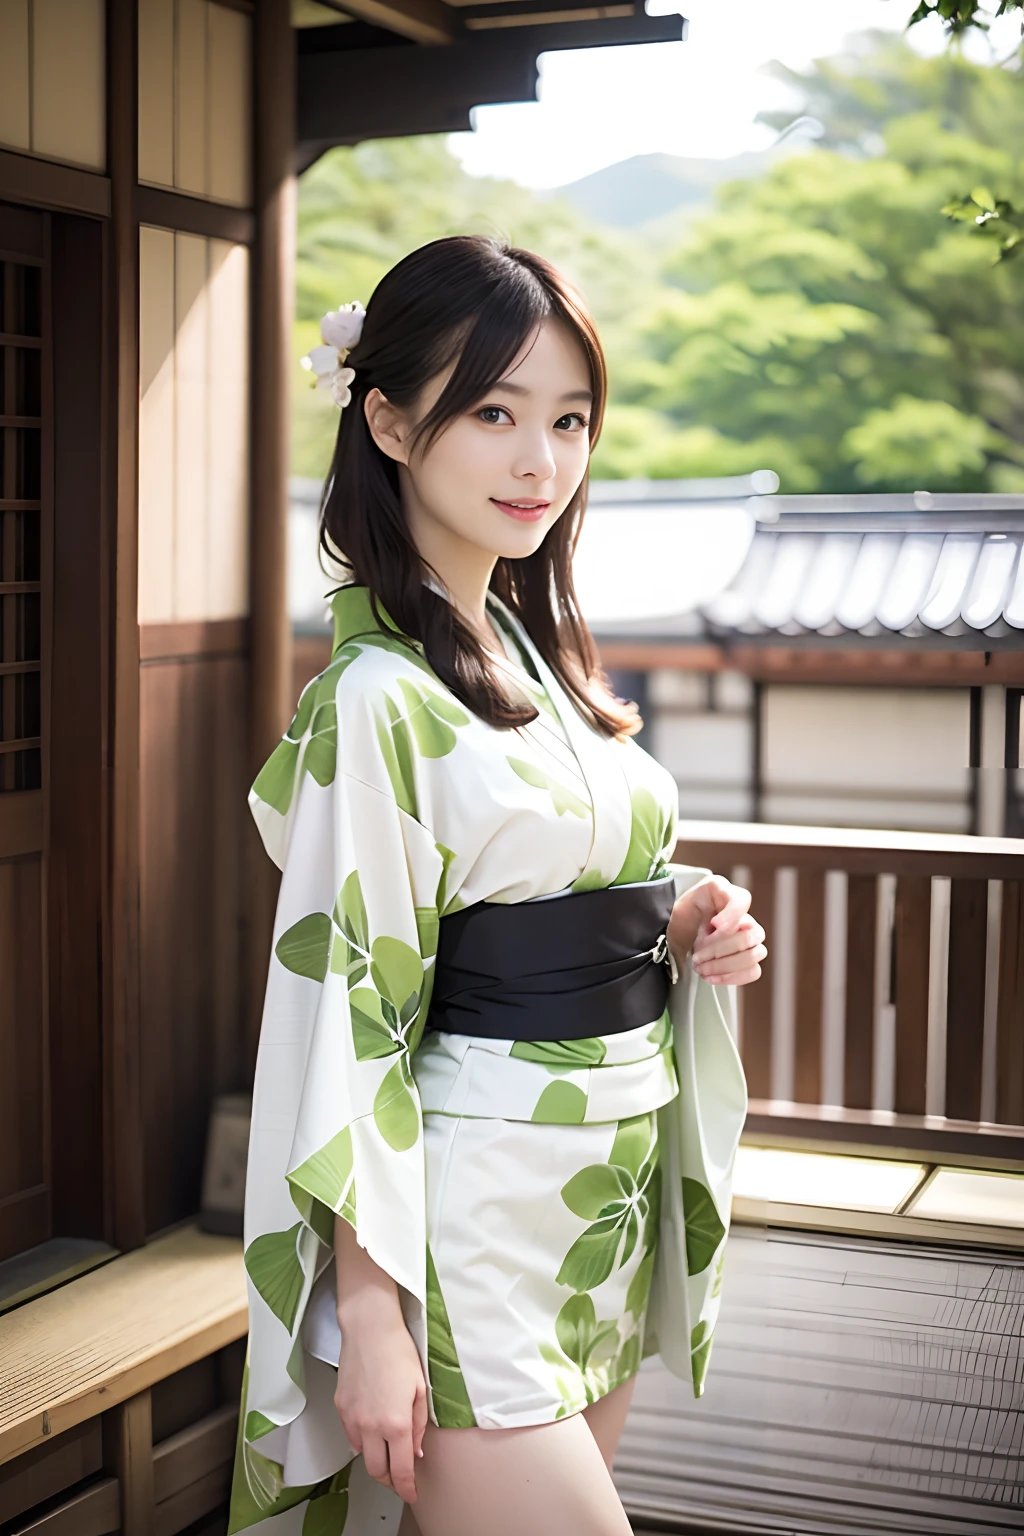 ((de primera calidad、​obra maestra、fotografía realista:1.4、en 8K))、hermosa hembra japonesa１a person、２5 años de edad、hermoso cabello、rostro delicado y hermoso、Ojos y caras con detalles. 、(abrir las piernas:1.2)、(Hermoso paisaje de Japón:1.2)、hermosa iluminación、Una sonrisa、piel texturizada、súper detalle、alto detalle、alta calidad、alta resolución、(Kimono:1.3)、flequillo、Toma una pose elegante、Boca detallada、abriendo la boca、con las piernas desnudas、levantamiento de falda